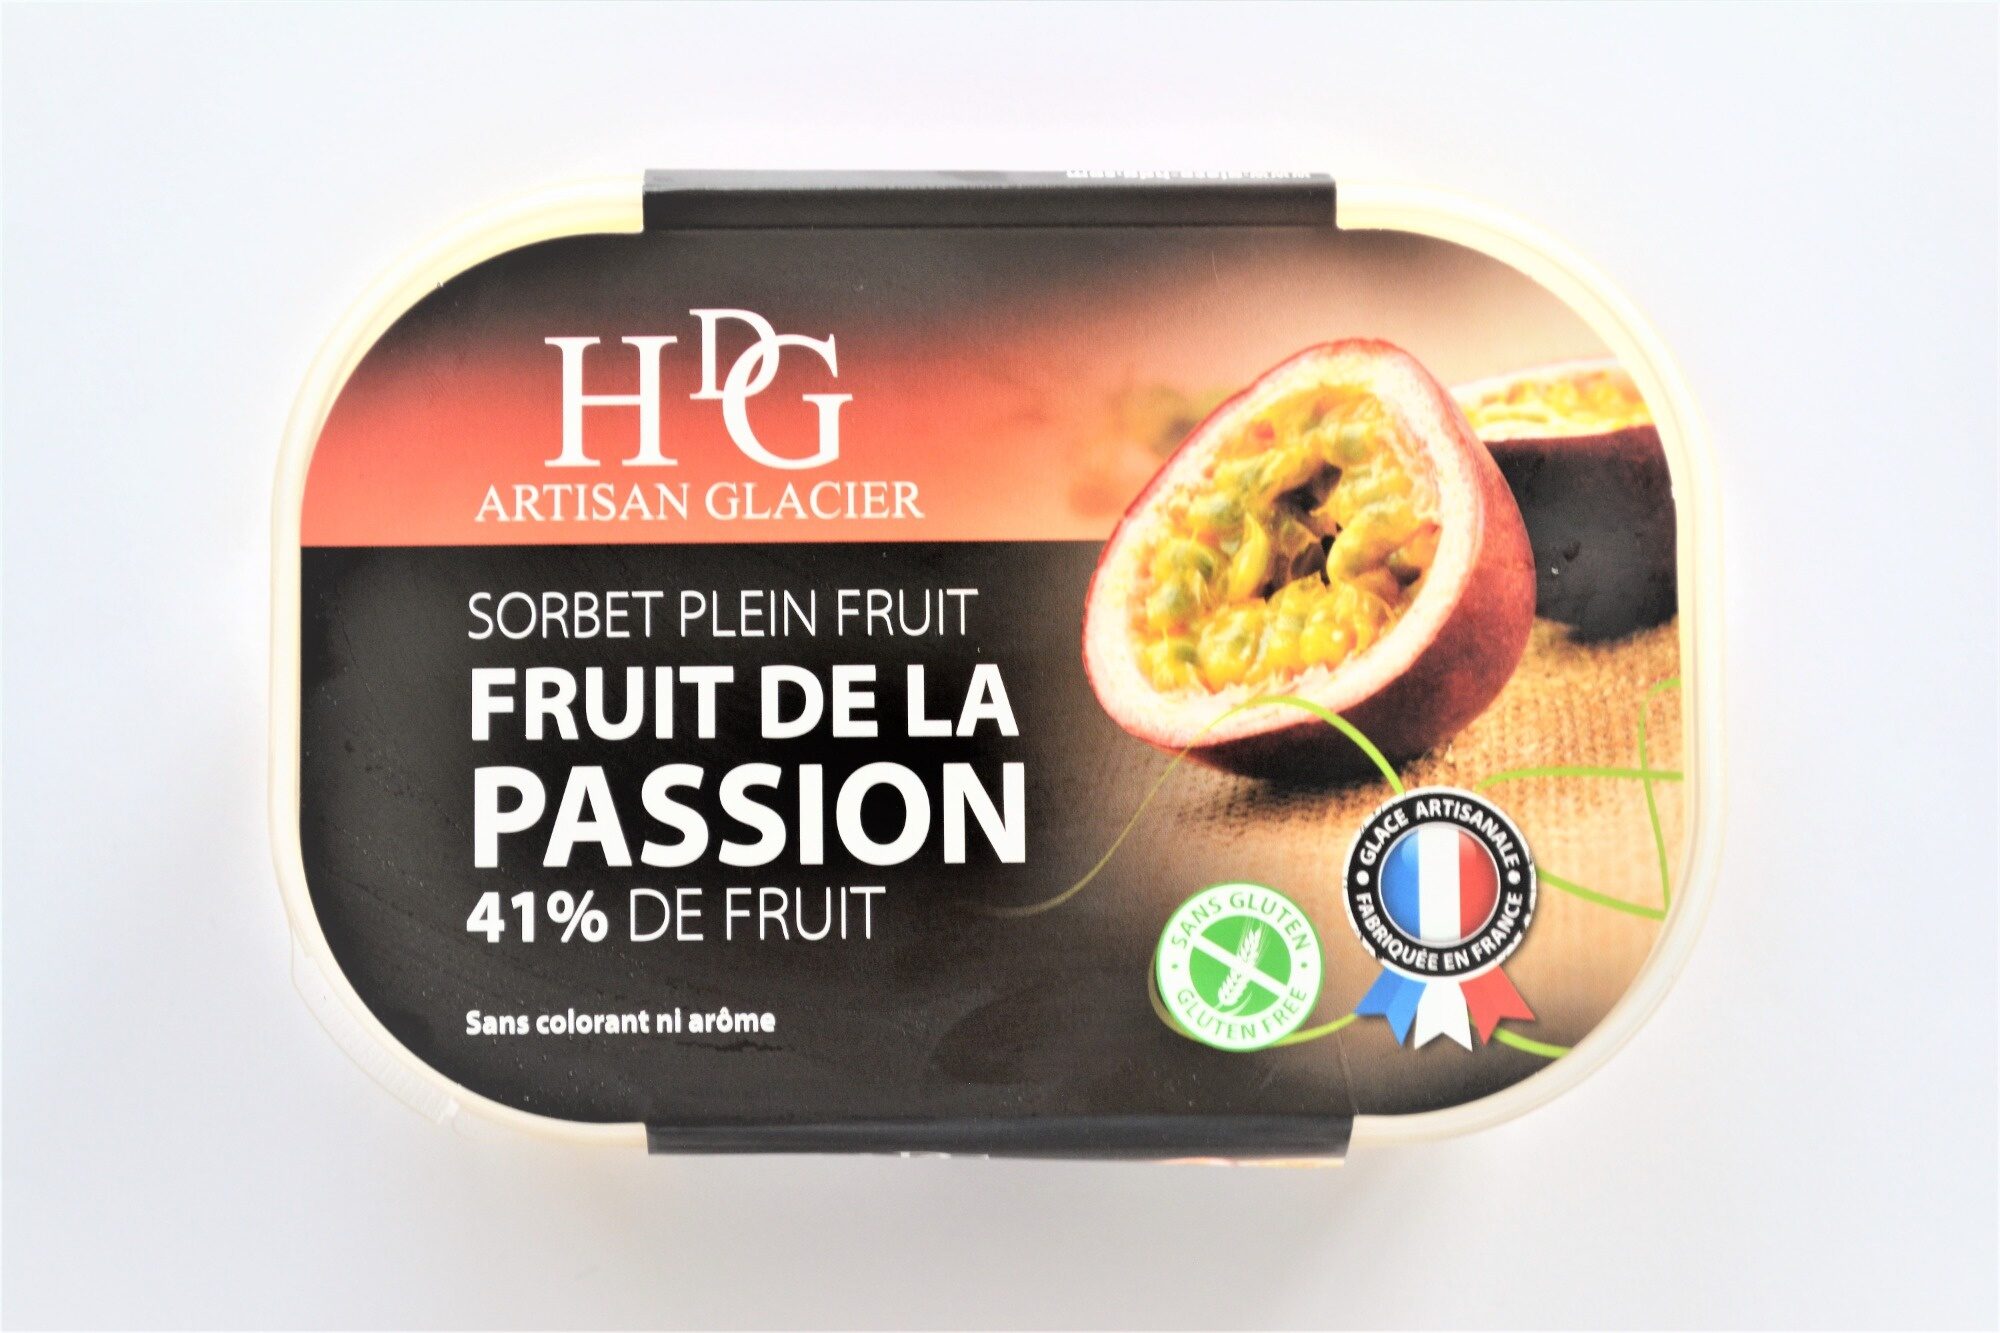 Sorbet plein fruit FRUIT DE LA PASSION, 41% de fruit - Producto - fr